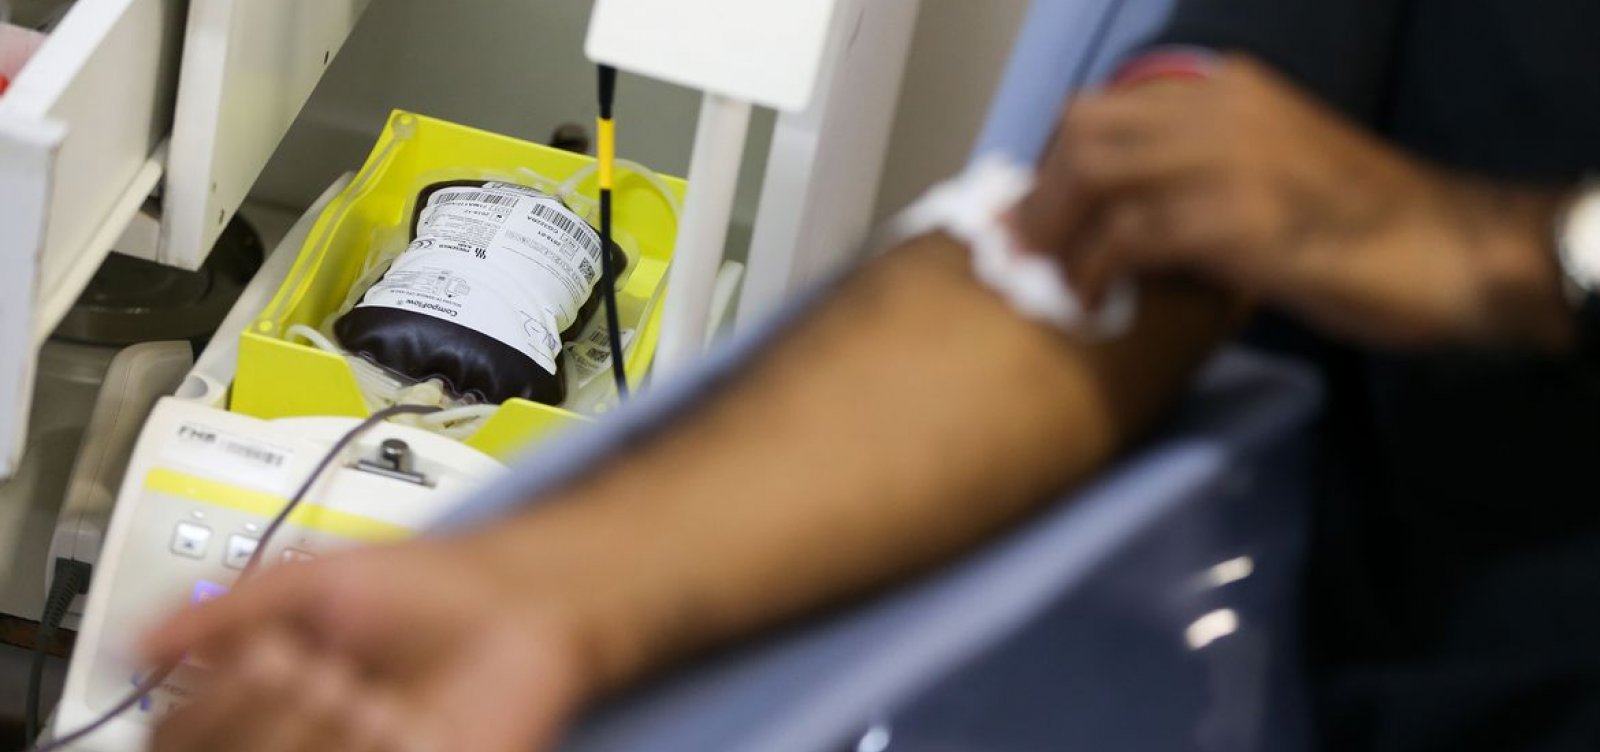 Anvisa revoga resolução que proibia doação de sangue por homens homossexuais